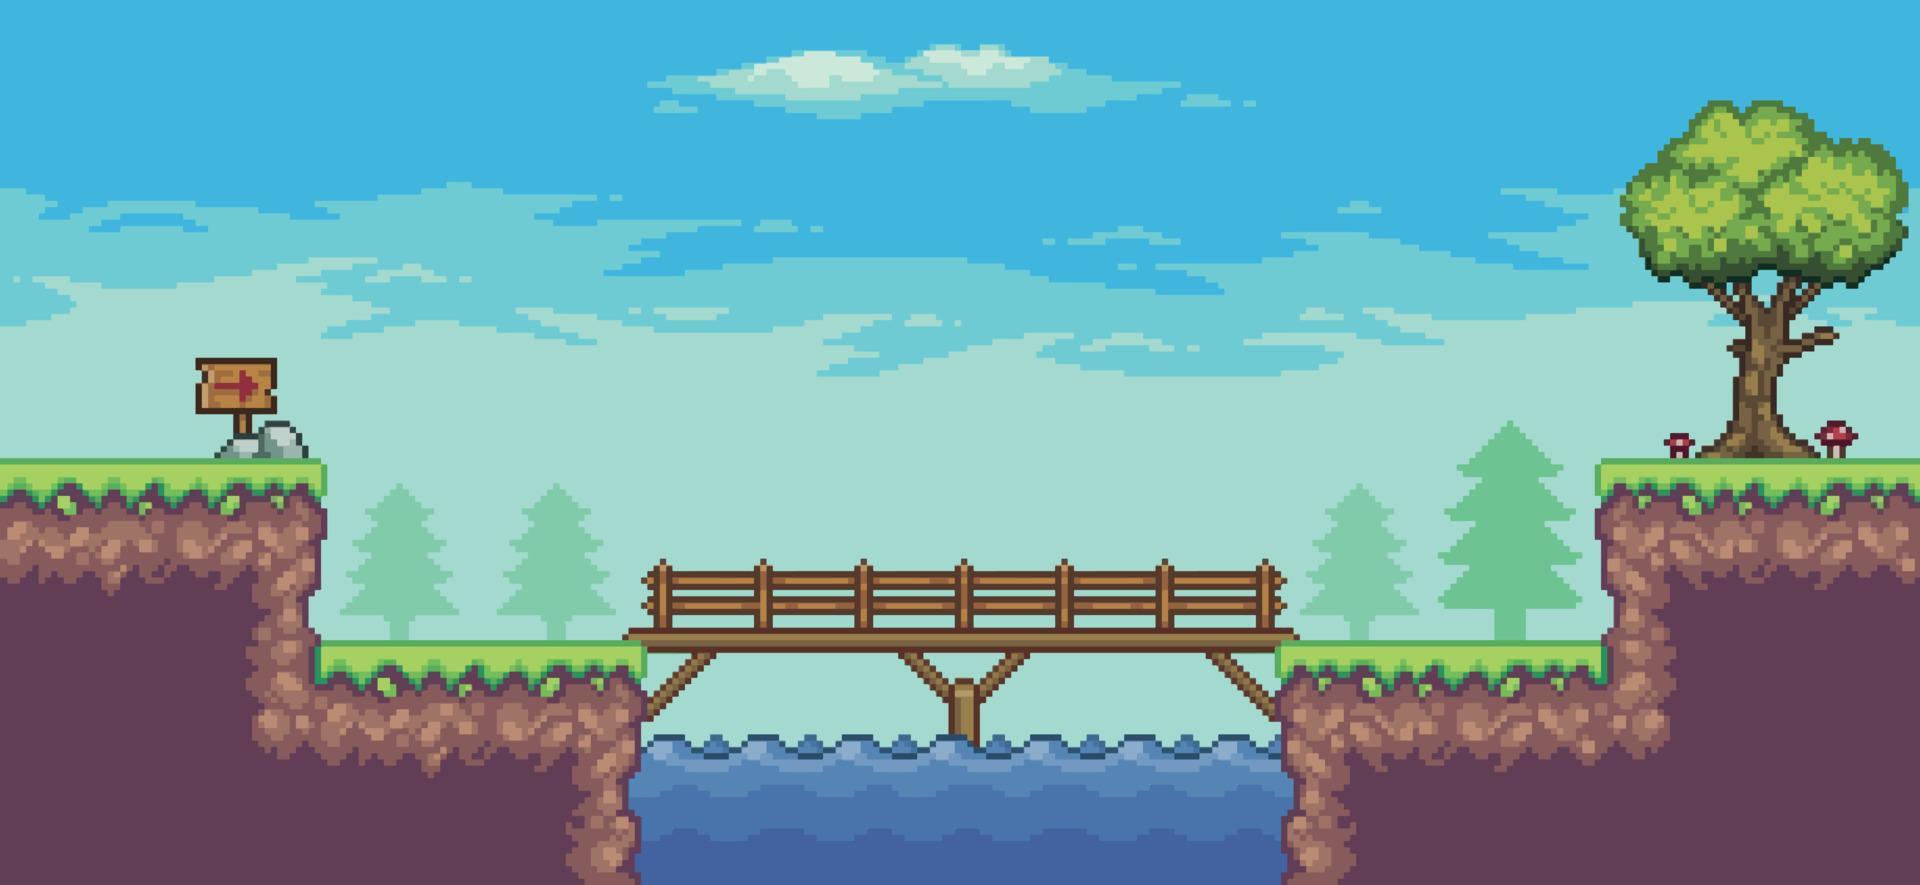 scène de jeu d'arcade pixel art avec arbre, lac, pont, clôture, planche et nuages fond vectoriel 8 bits